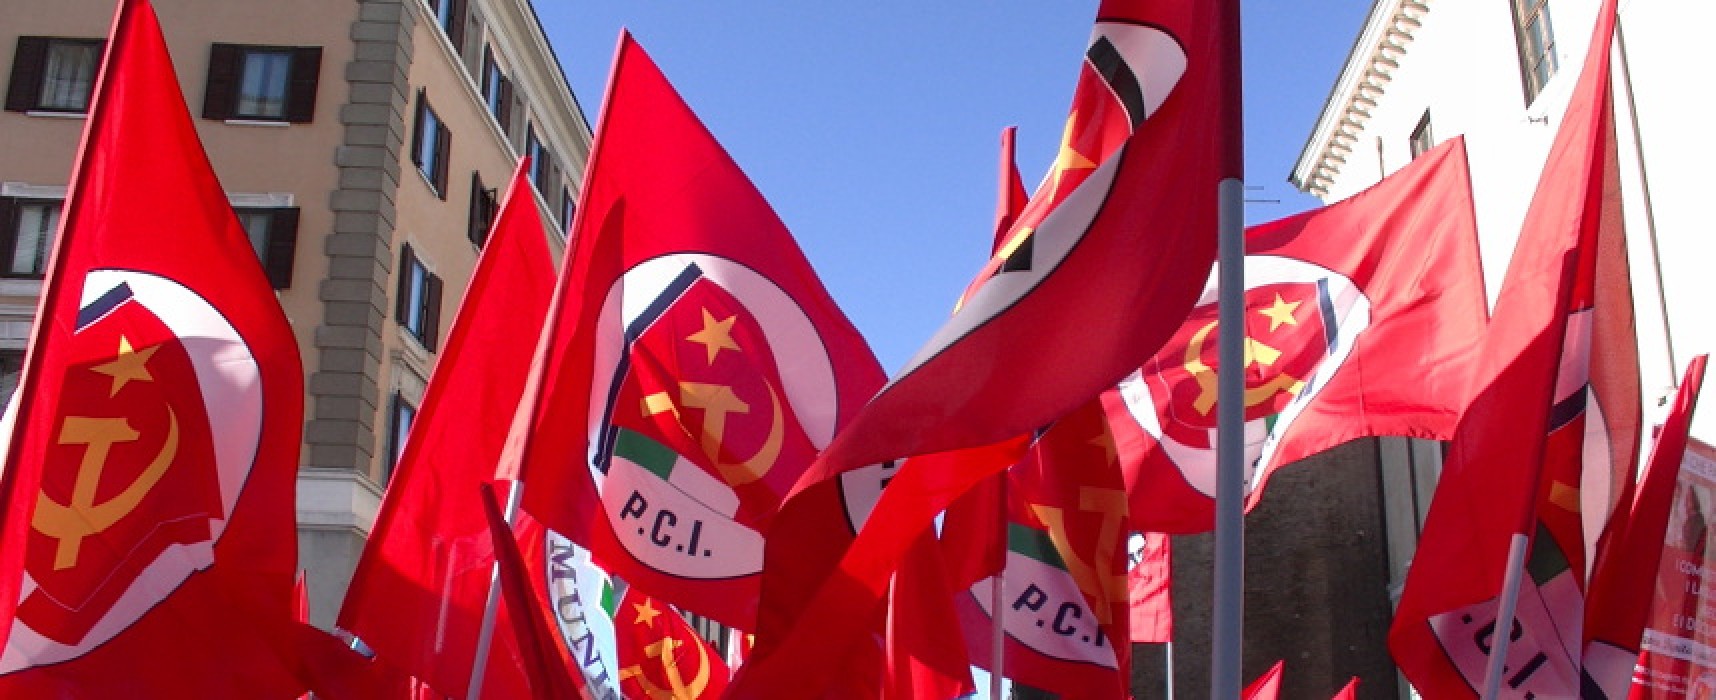 Partito Comunista d’Italia sul caso Azzollini: “Quello che è accaduto è vergognoso”